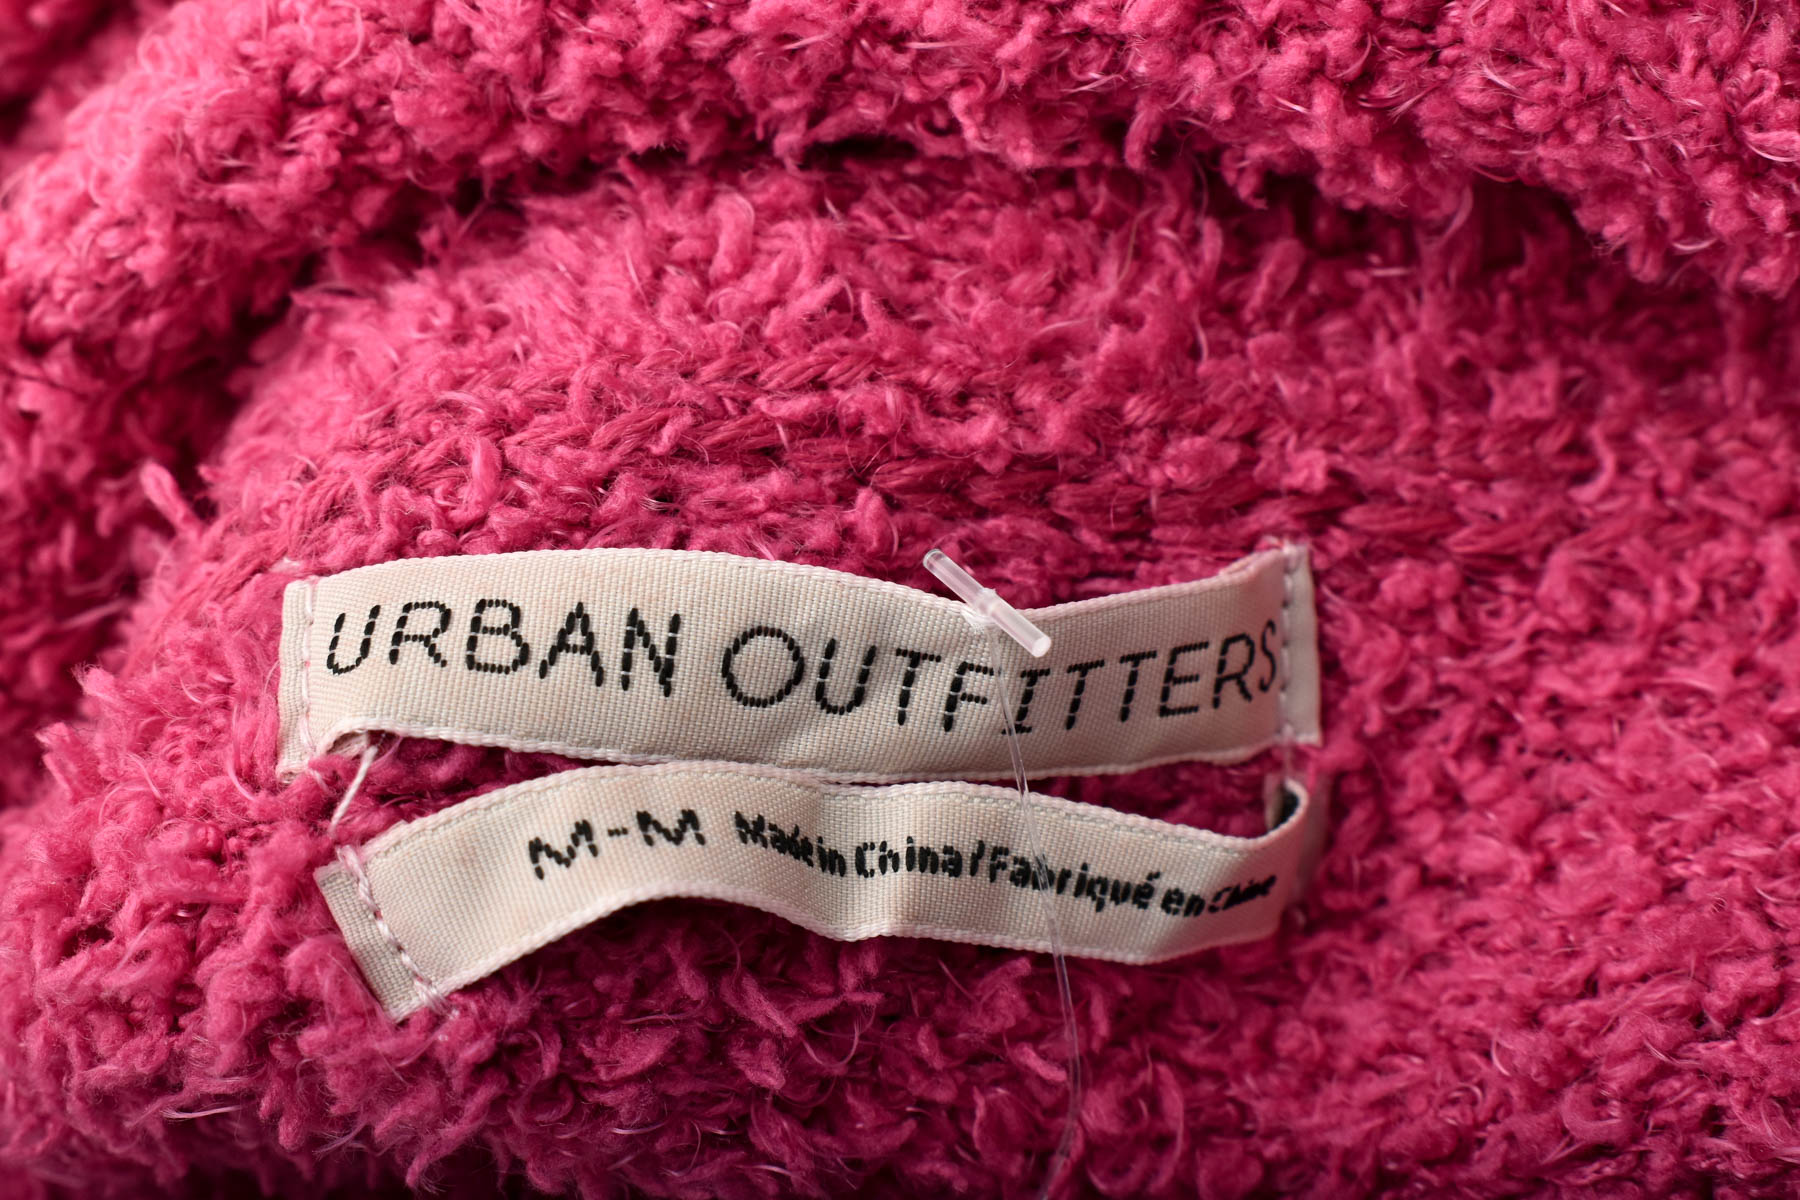 Γυναικείο ρούχο απο πολικό υφασμα - URBAN OUTFITTERS - 2